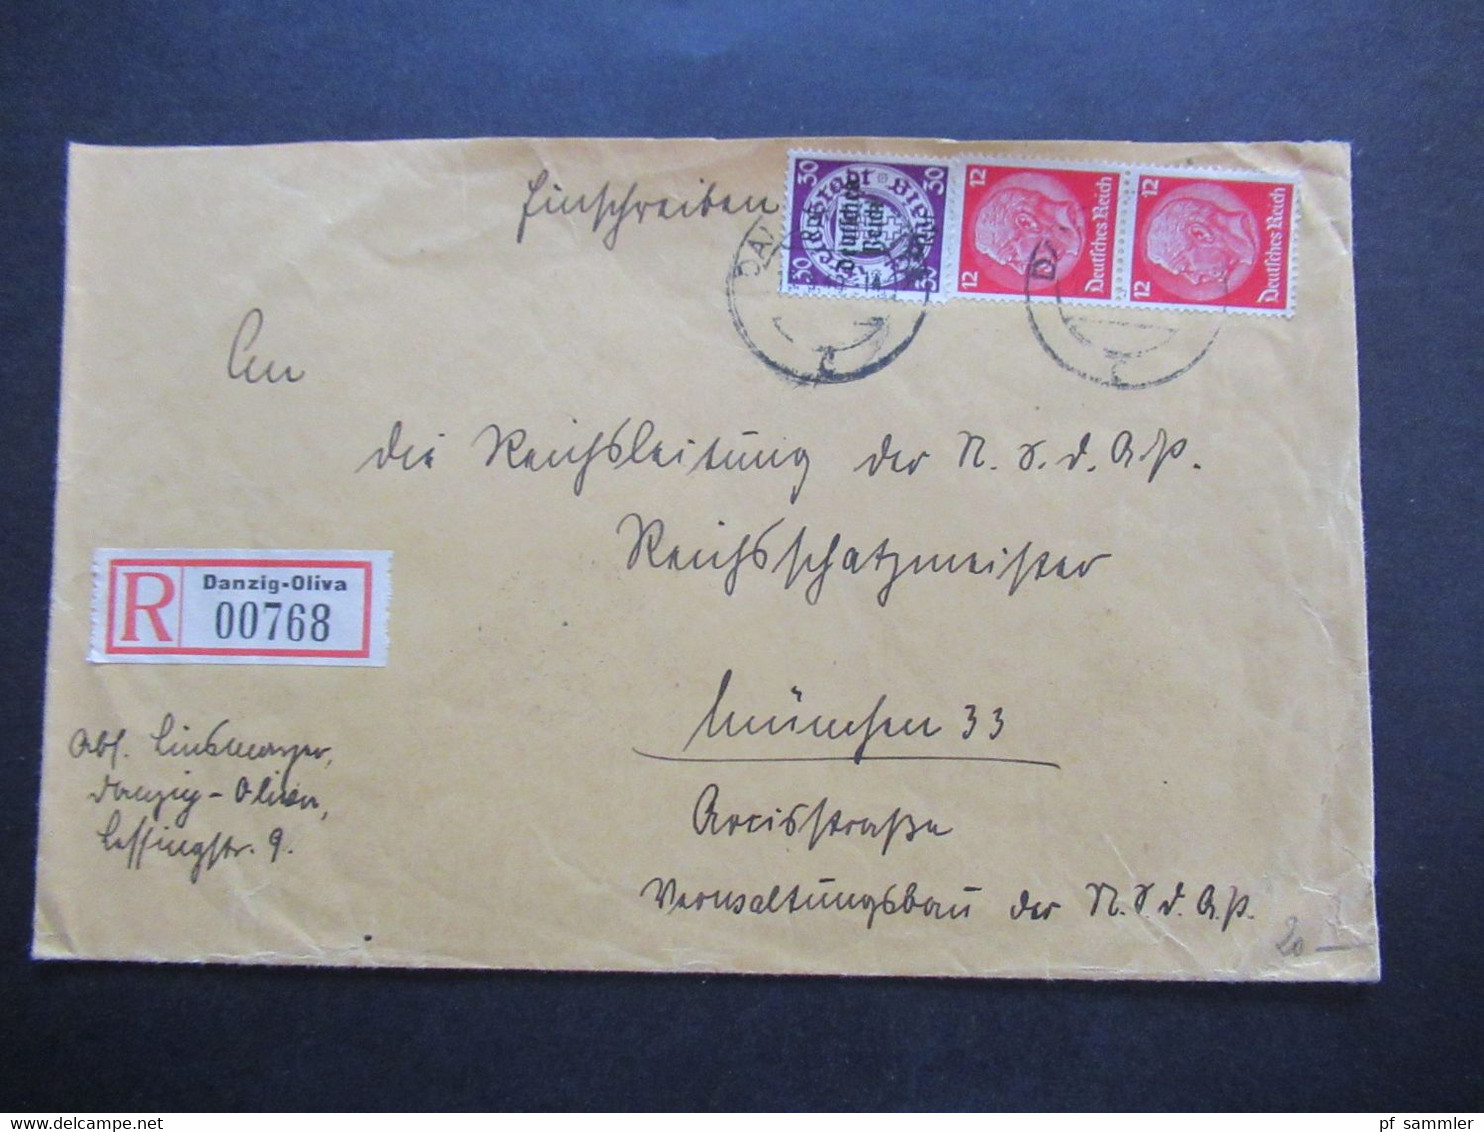 3.Reich 1940 Danzig Einschreiben Danzig Oliva 00768 An Die Reichsleitung Der NSDAP In München Mit 2 Ank. Stempel - Covers & Documents